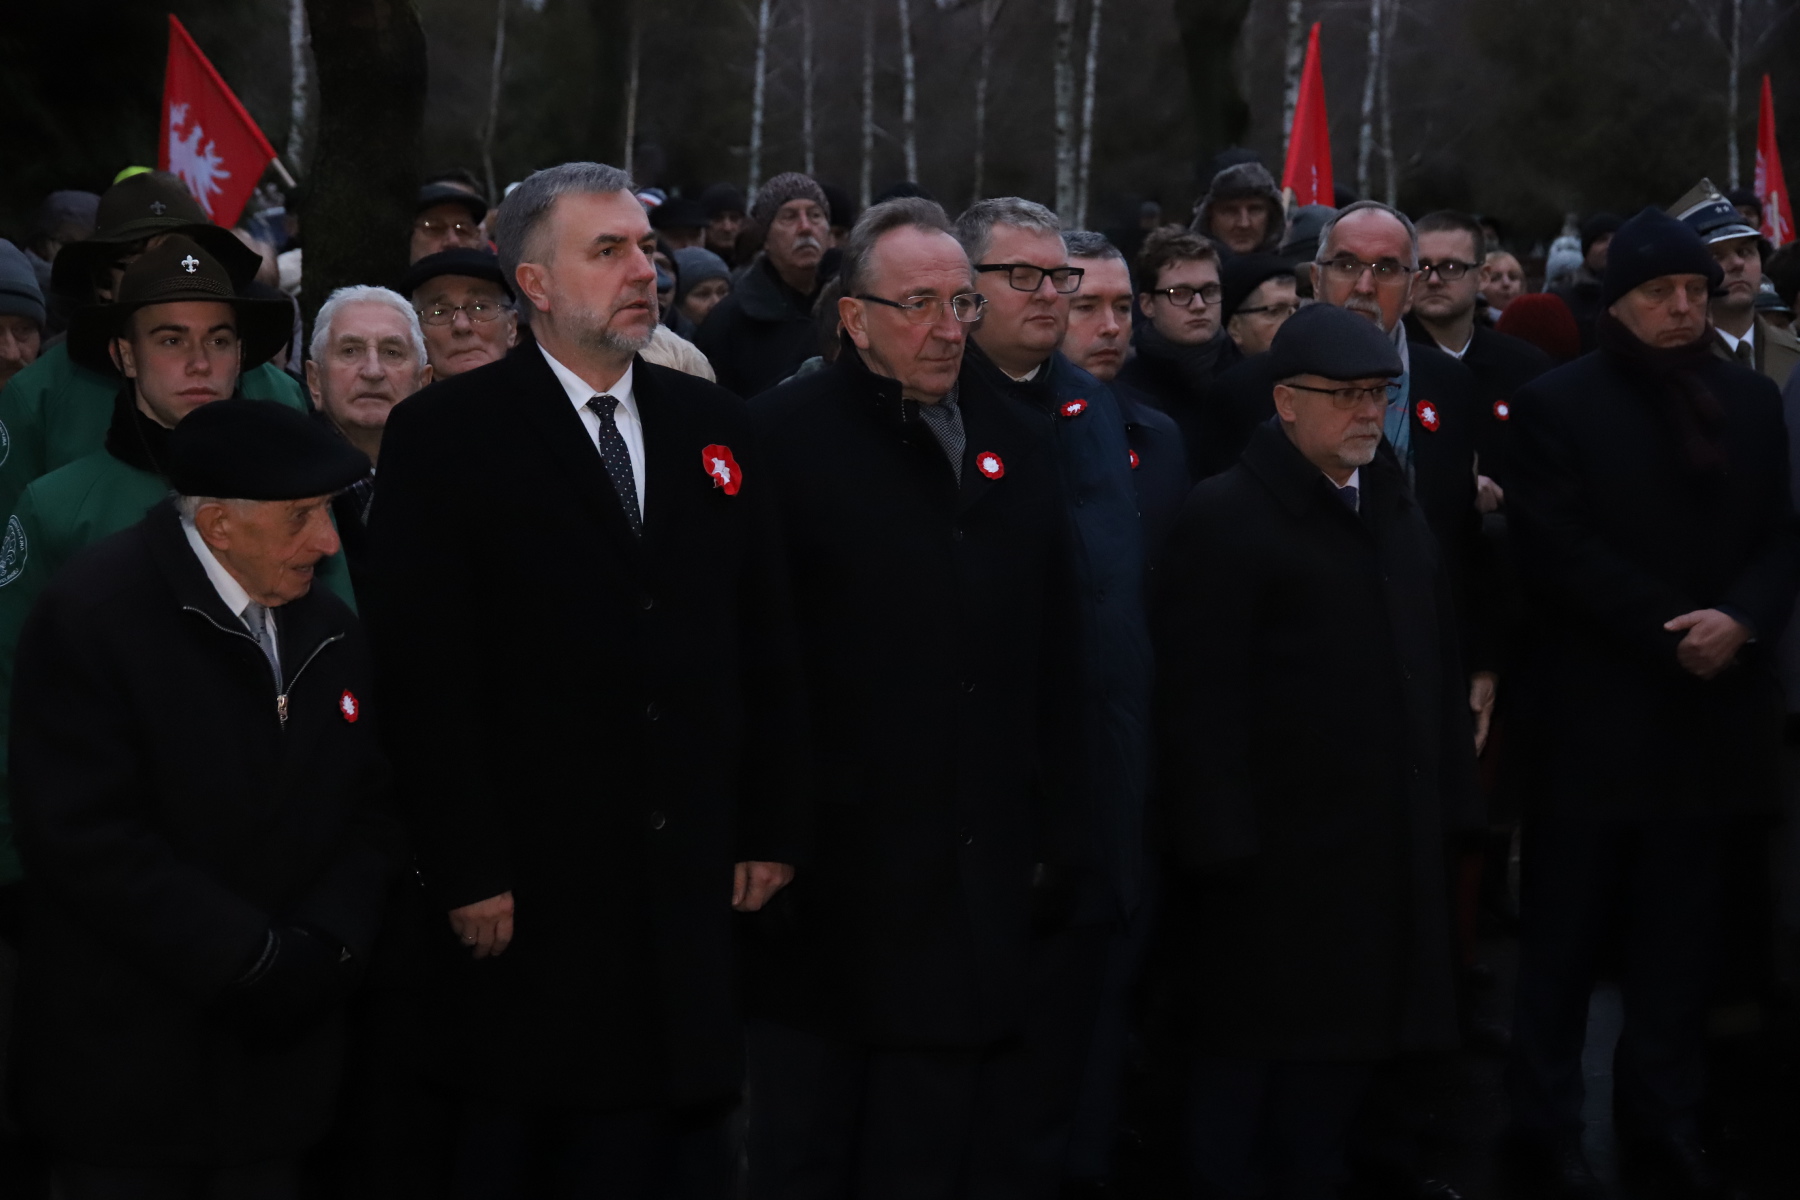 Uroczystości z okazji 100. rocznicy wybuchu Powstania Wielkopolskiego - relacja z obchodów w Warszawie